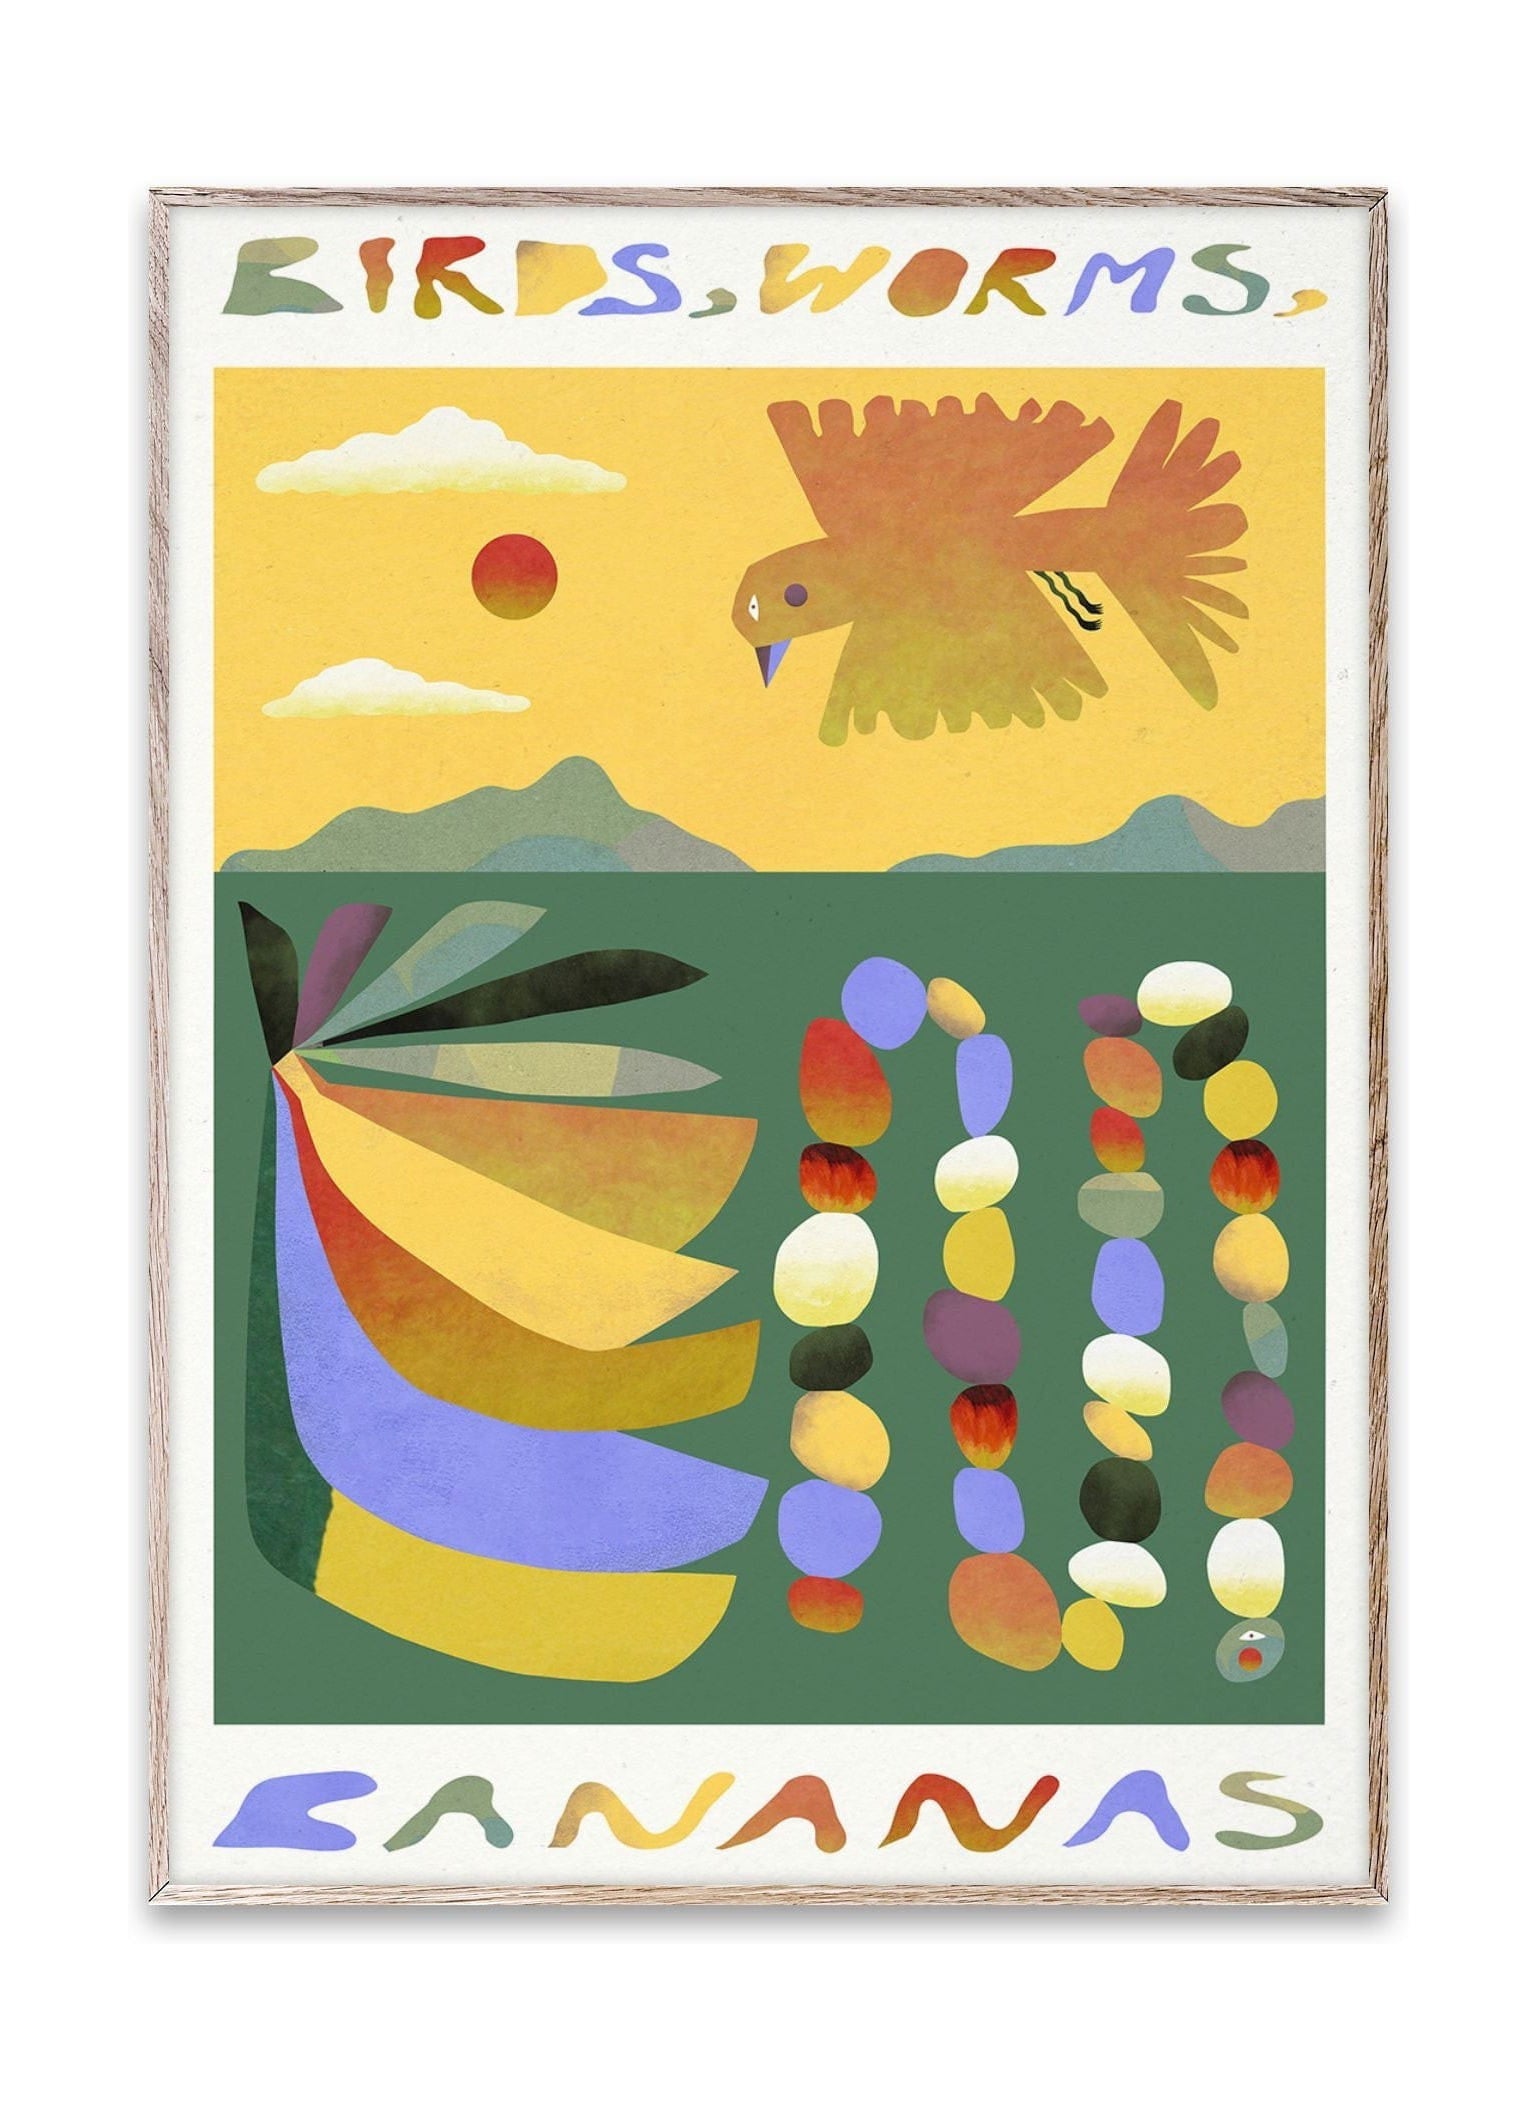 Birdini collettivi di carta, vermi, poster di banane, 50 x70 cm